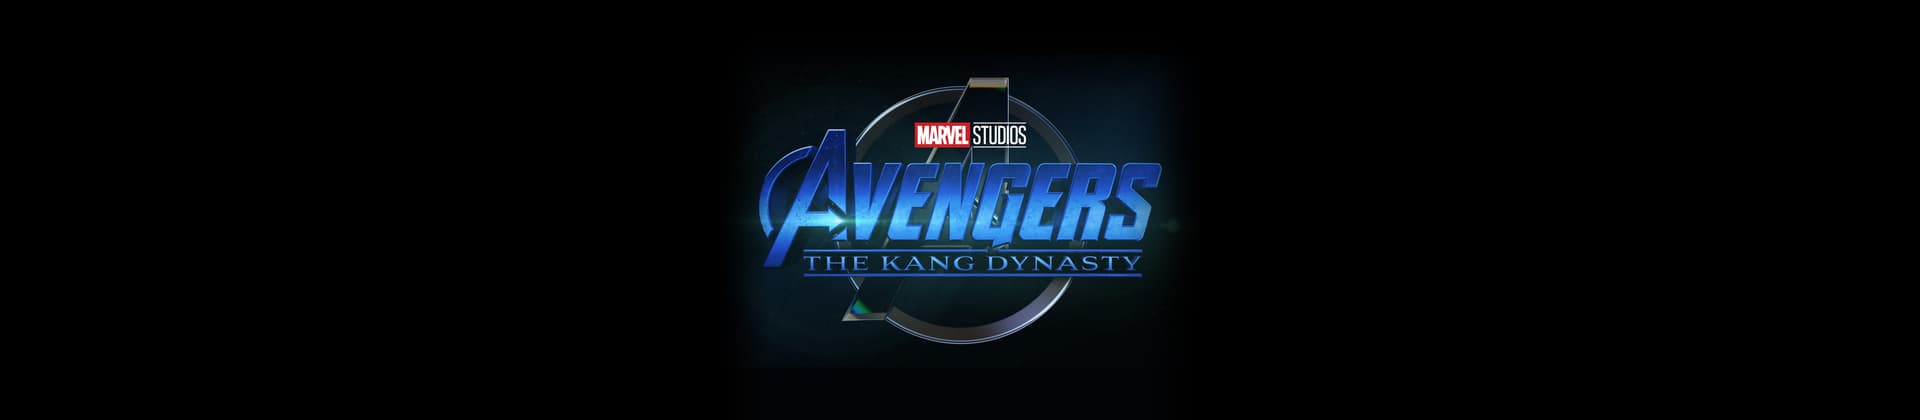 Marvel Studios' Avengers: The Kang Dynasty Movie Logo on Black